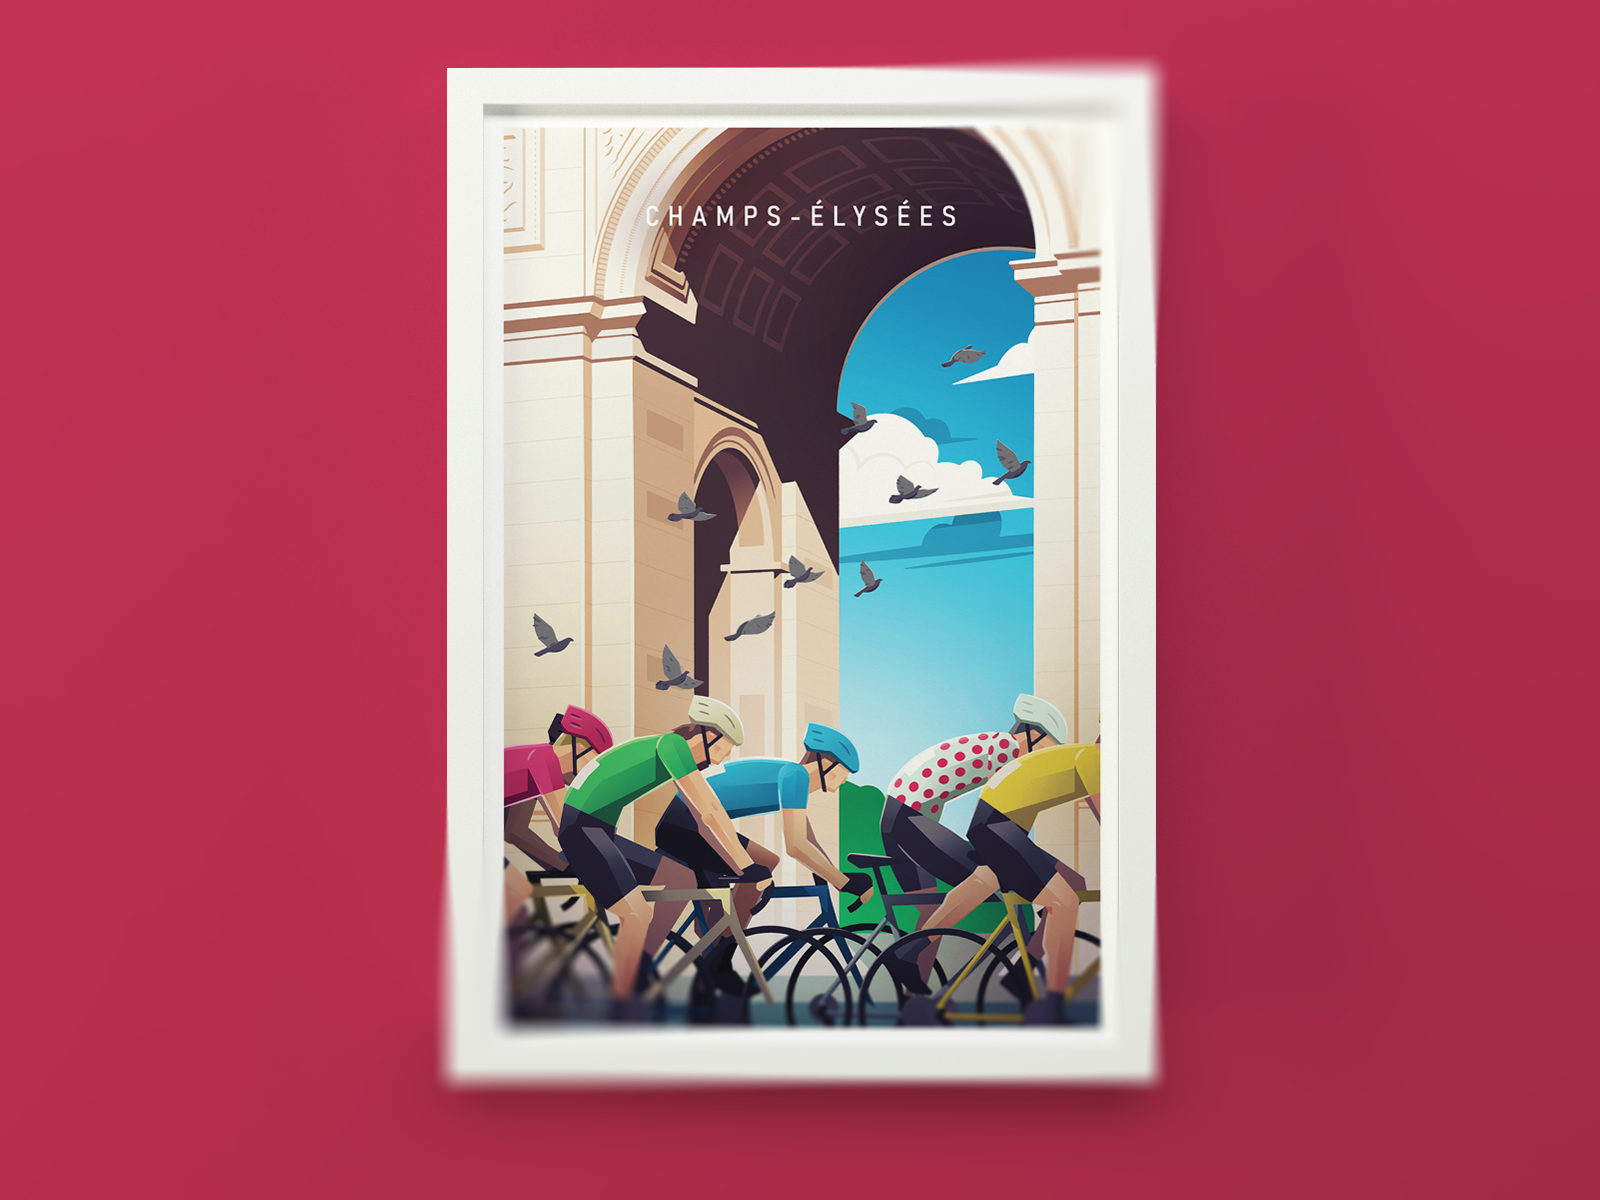 Champs-élysées bicycle bike cycling france illustration paris poster vintage poster